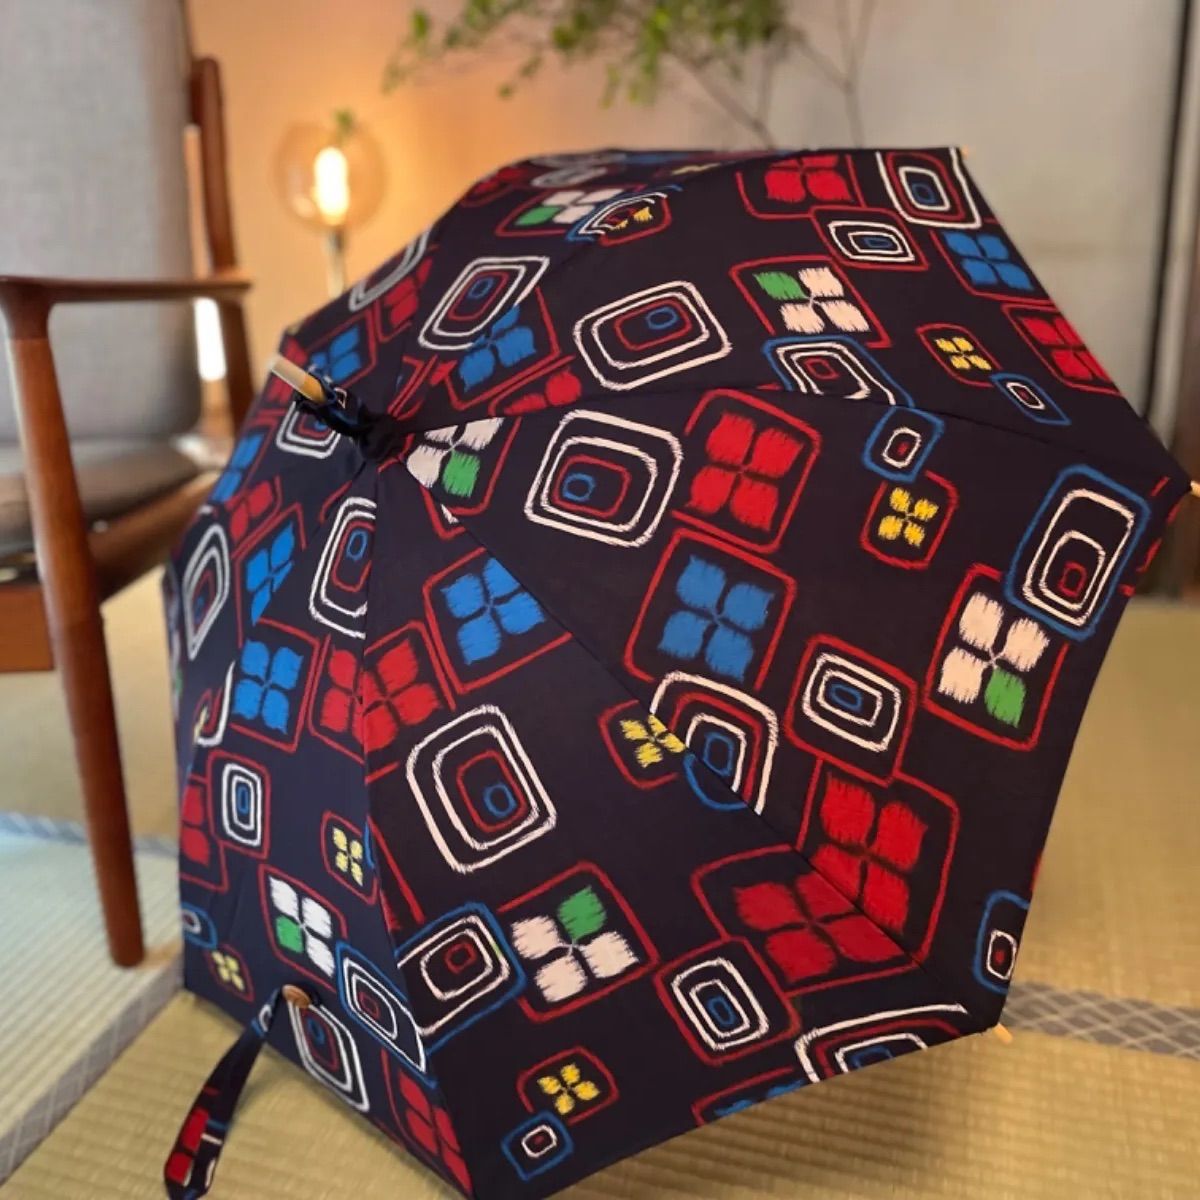 ハンドメイド お着物布で作った日傘 - Kohaku - メルカリ